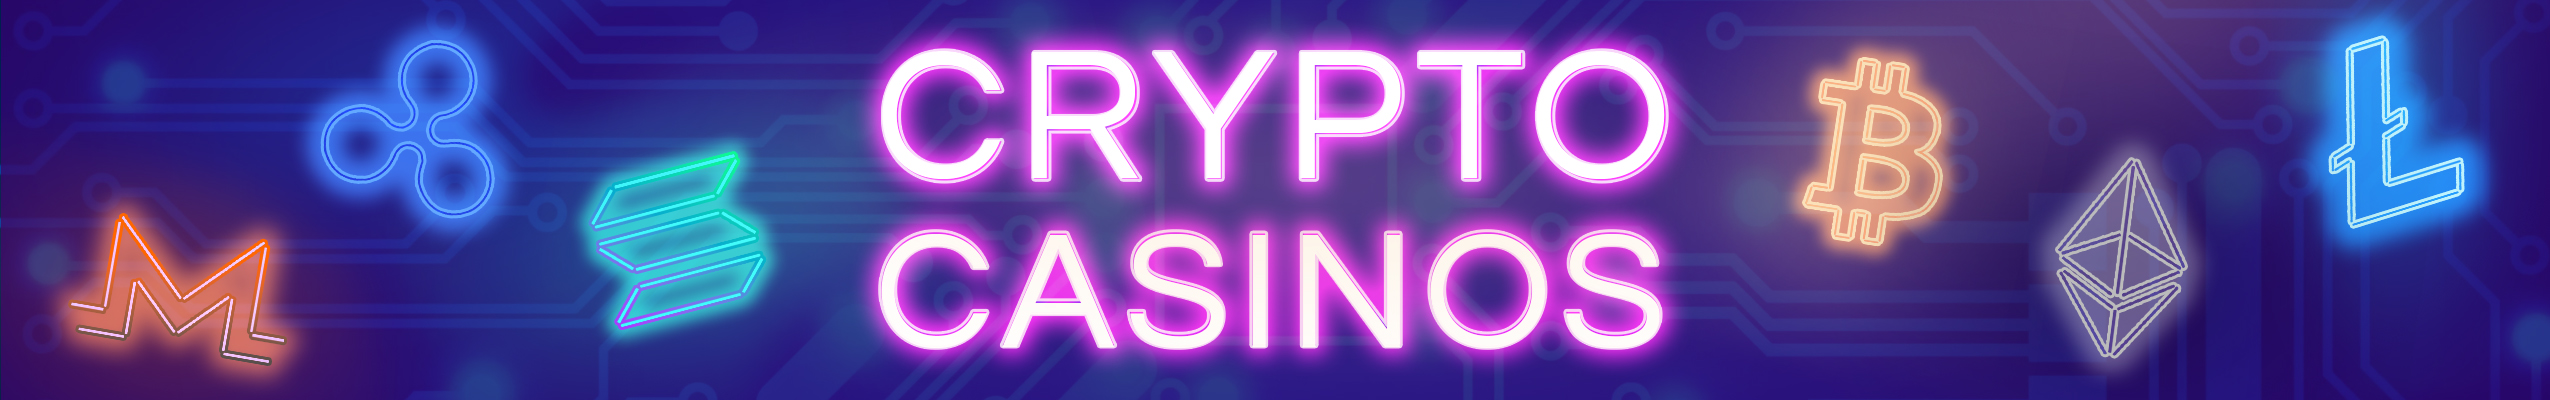 Cypto Casinos Seite Hero Banner mit ripple, monero, solana, ethereum, litecoin und bitcoin neon logos